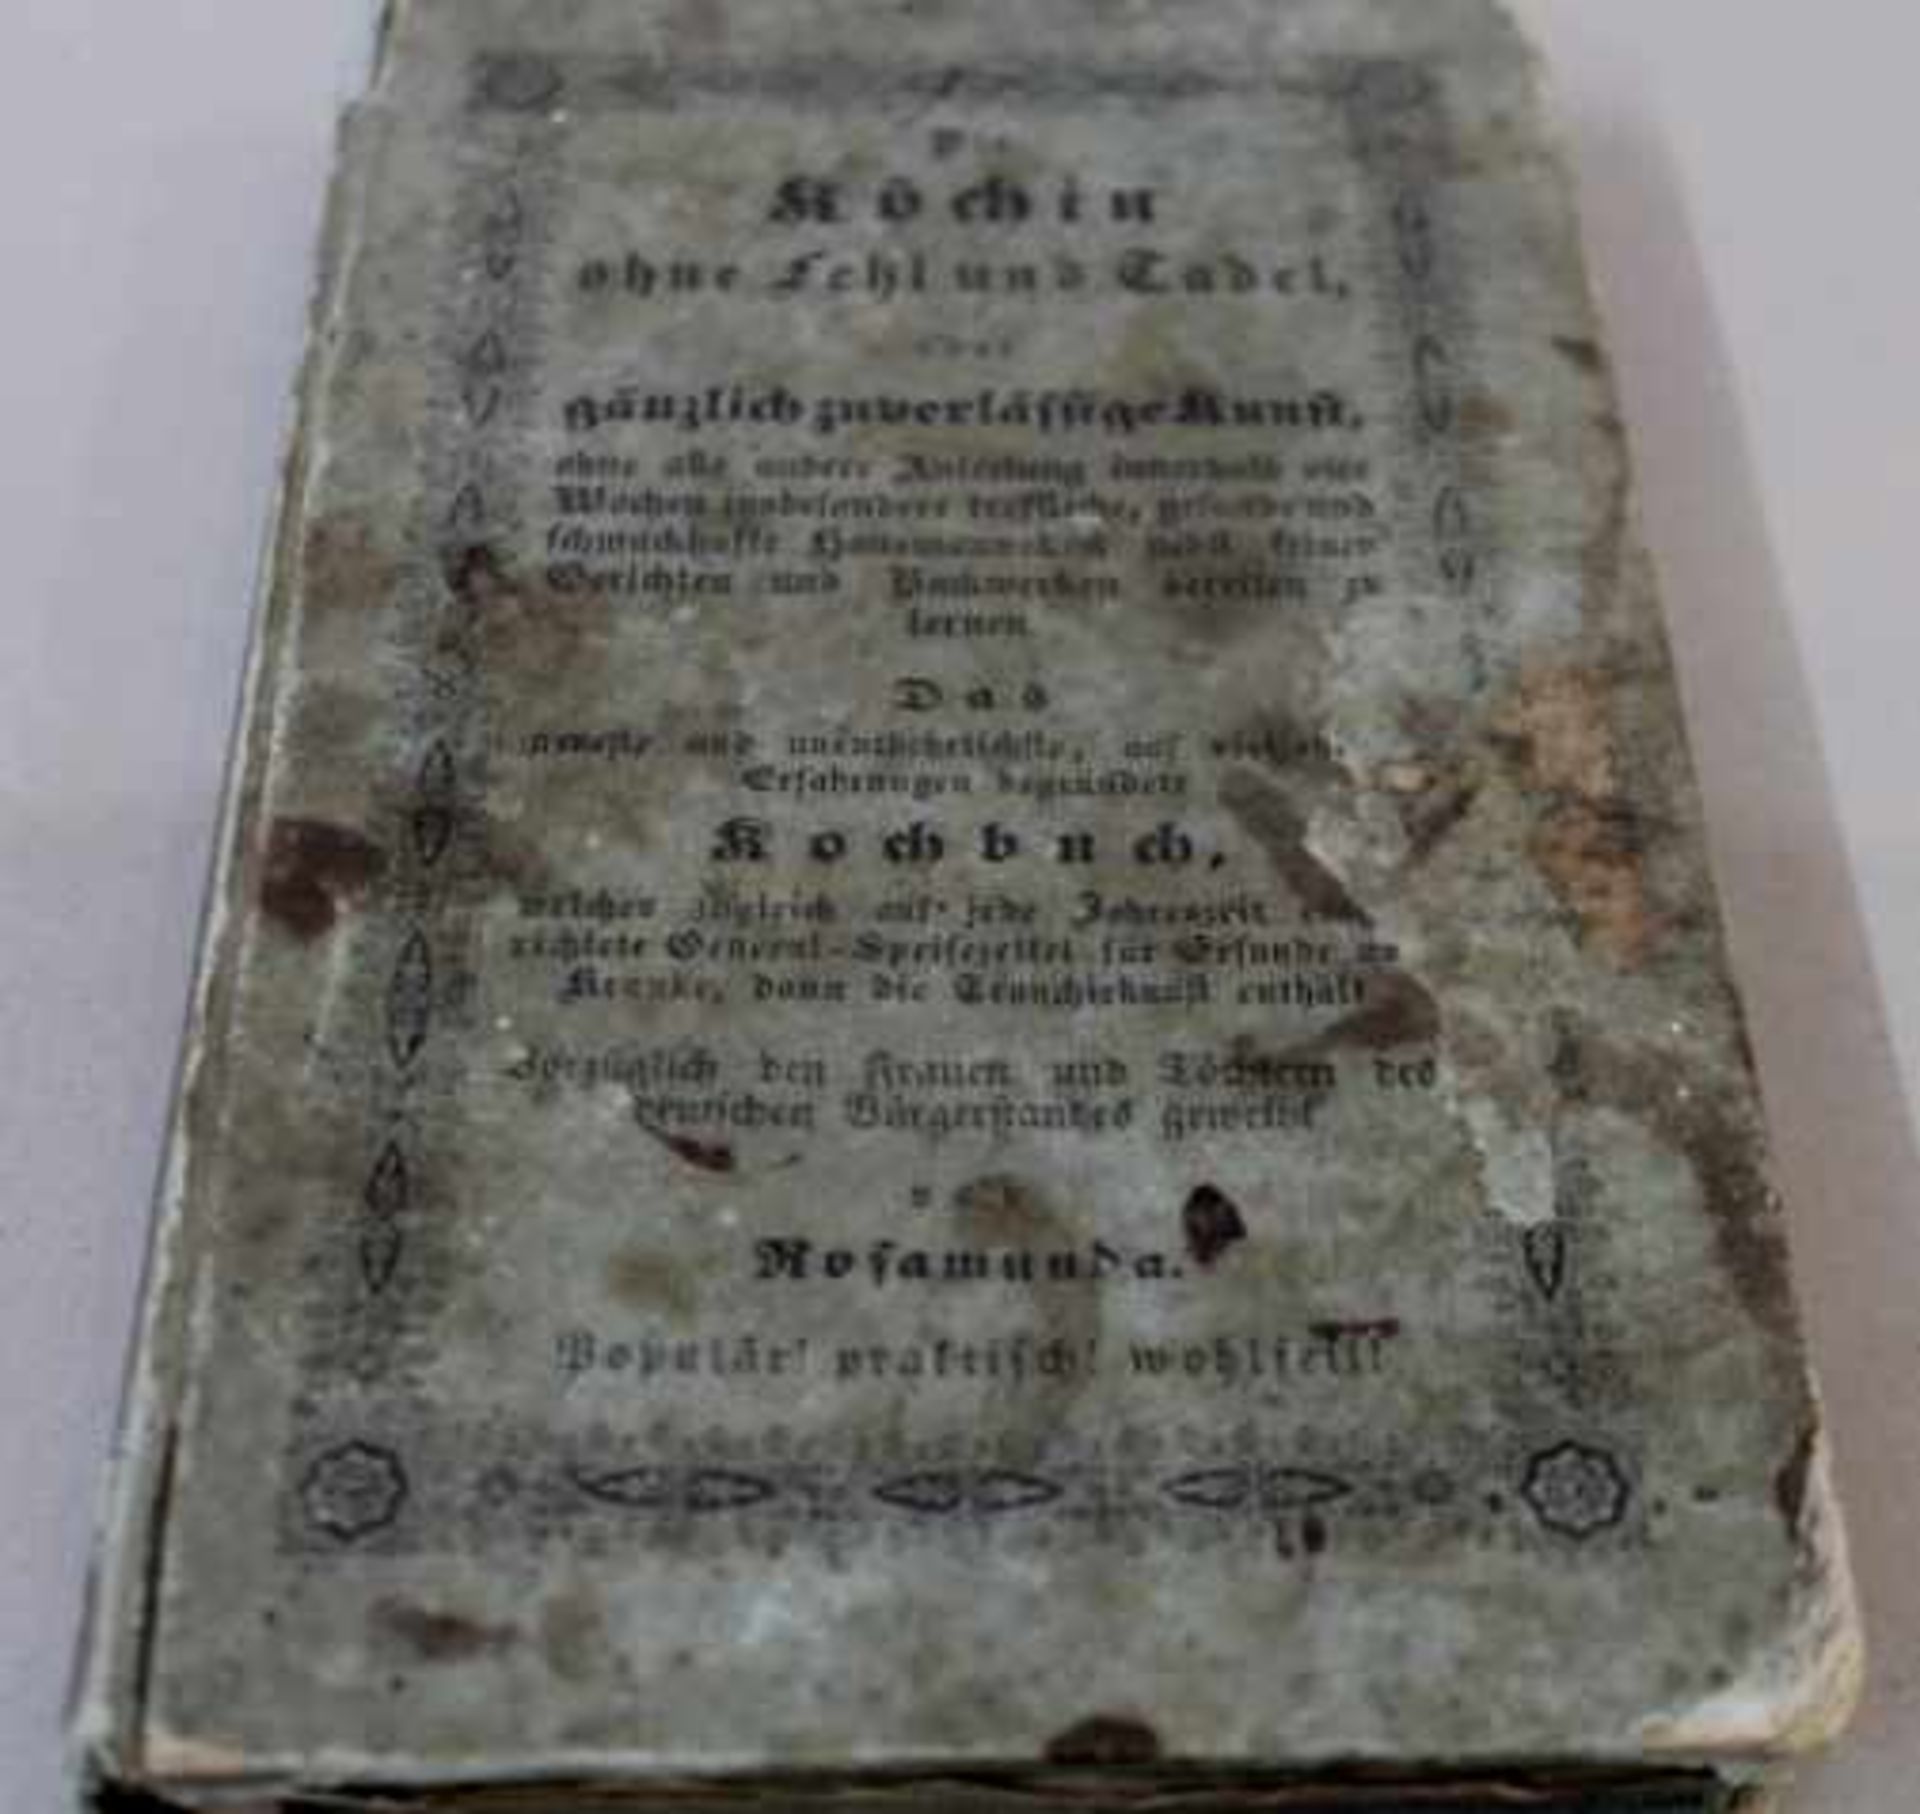 Kochbuch die Köchin ohne Fehlund Tadel von RosamundaMünchen 1844Joseph Lindauersche